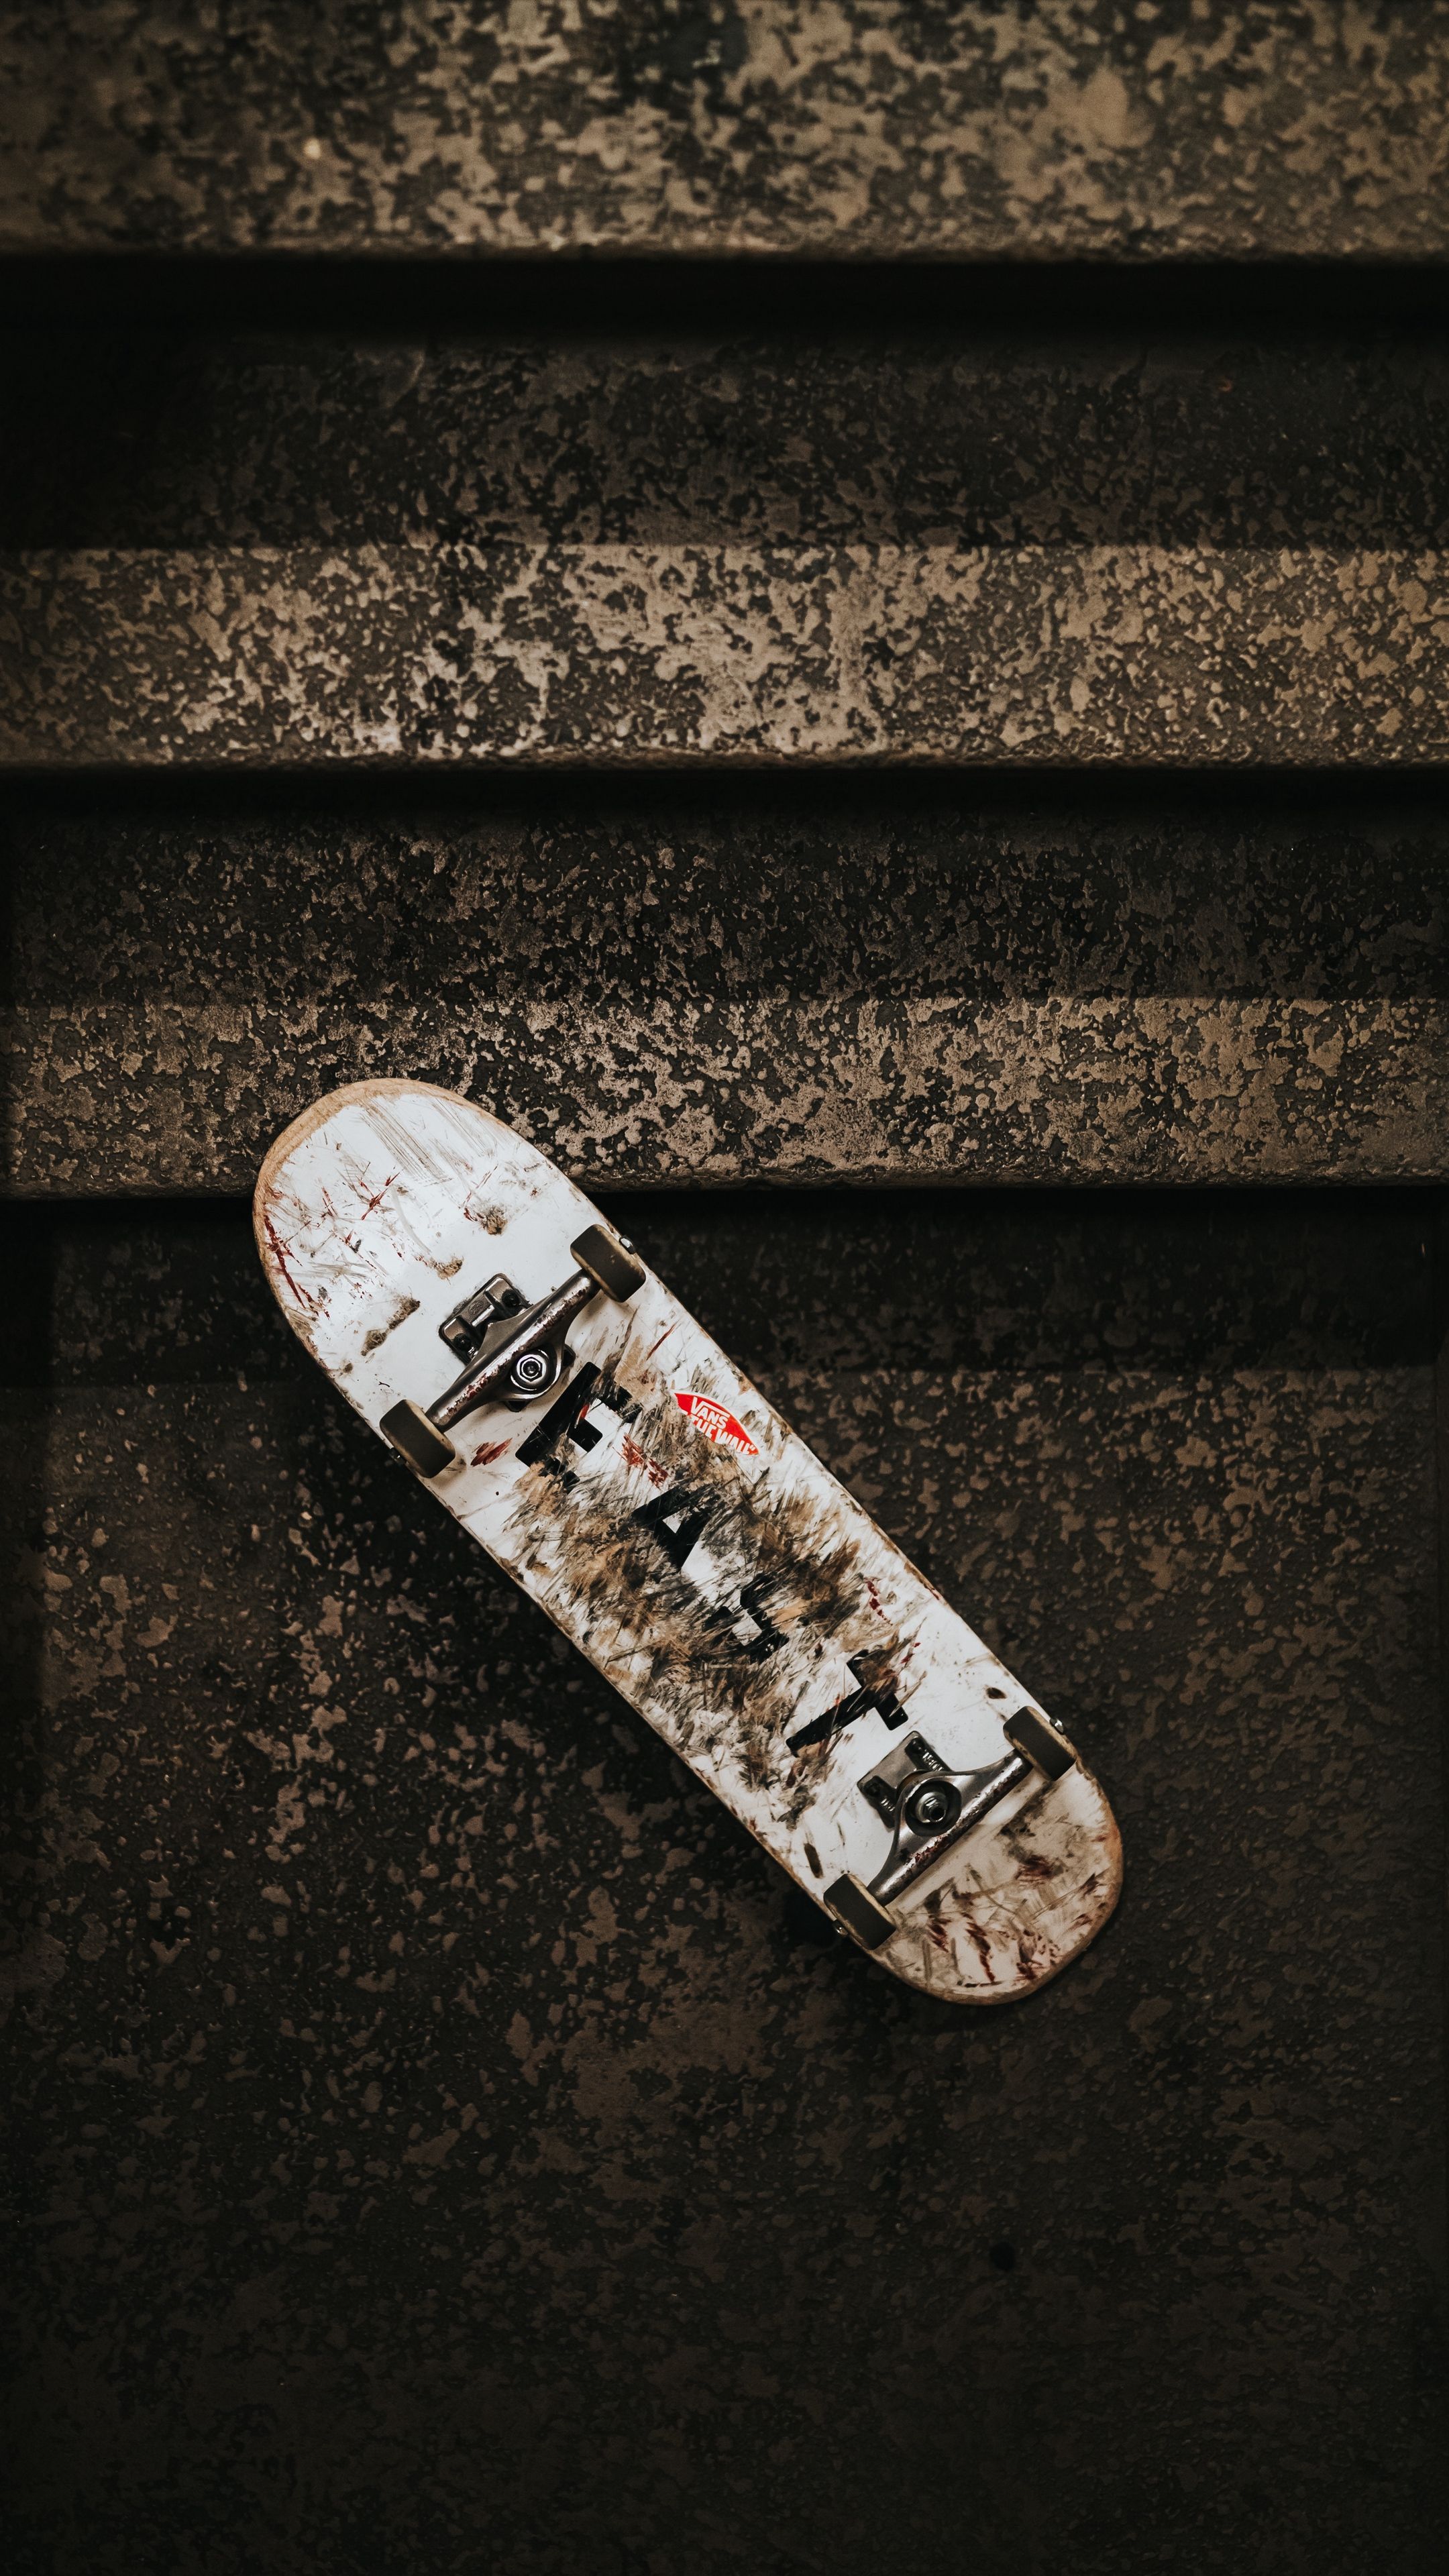 Sports #skateboard, #ladder, #wheels #wallpaper HD 4k background